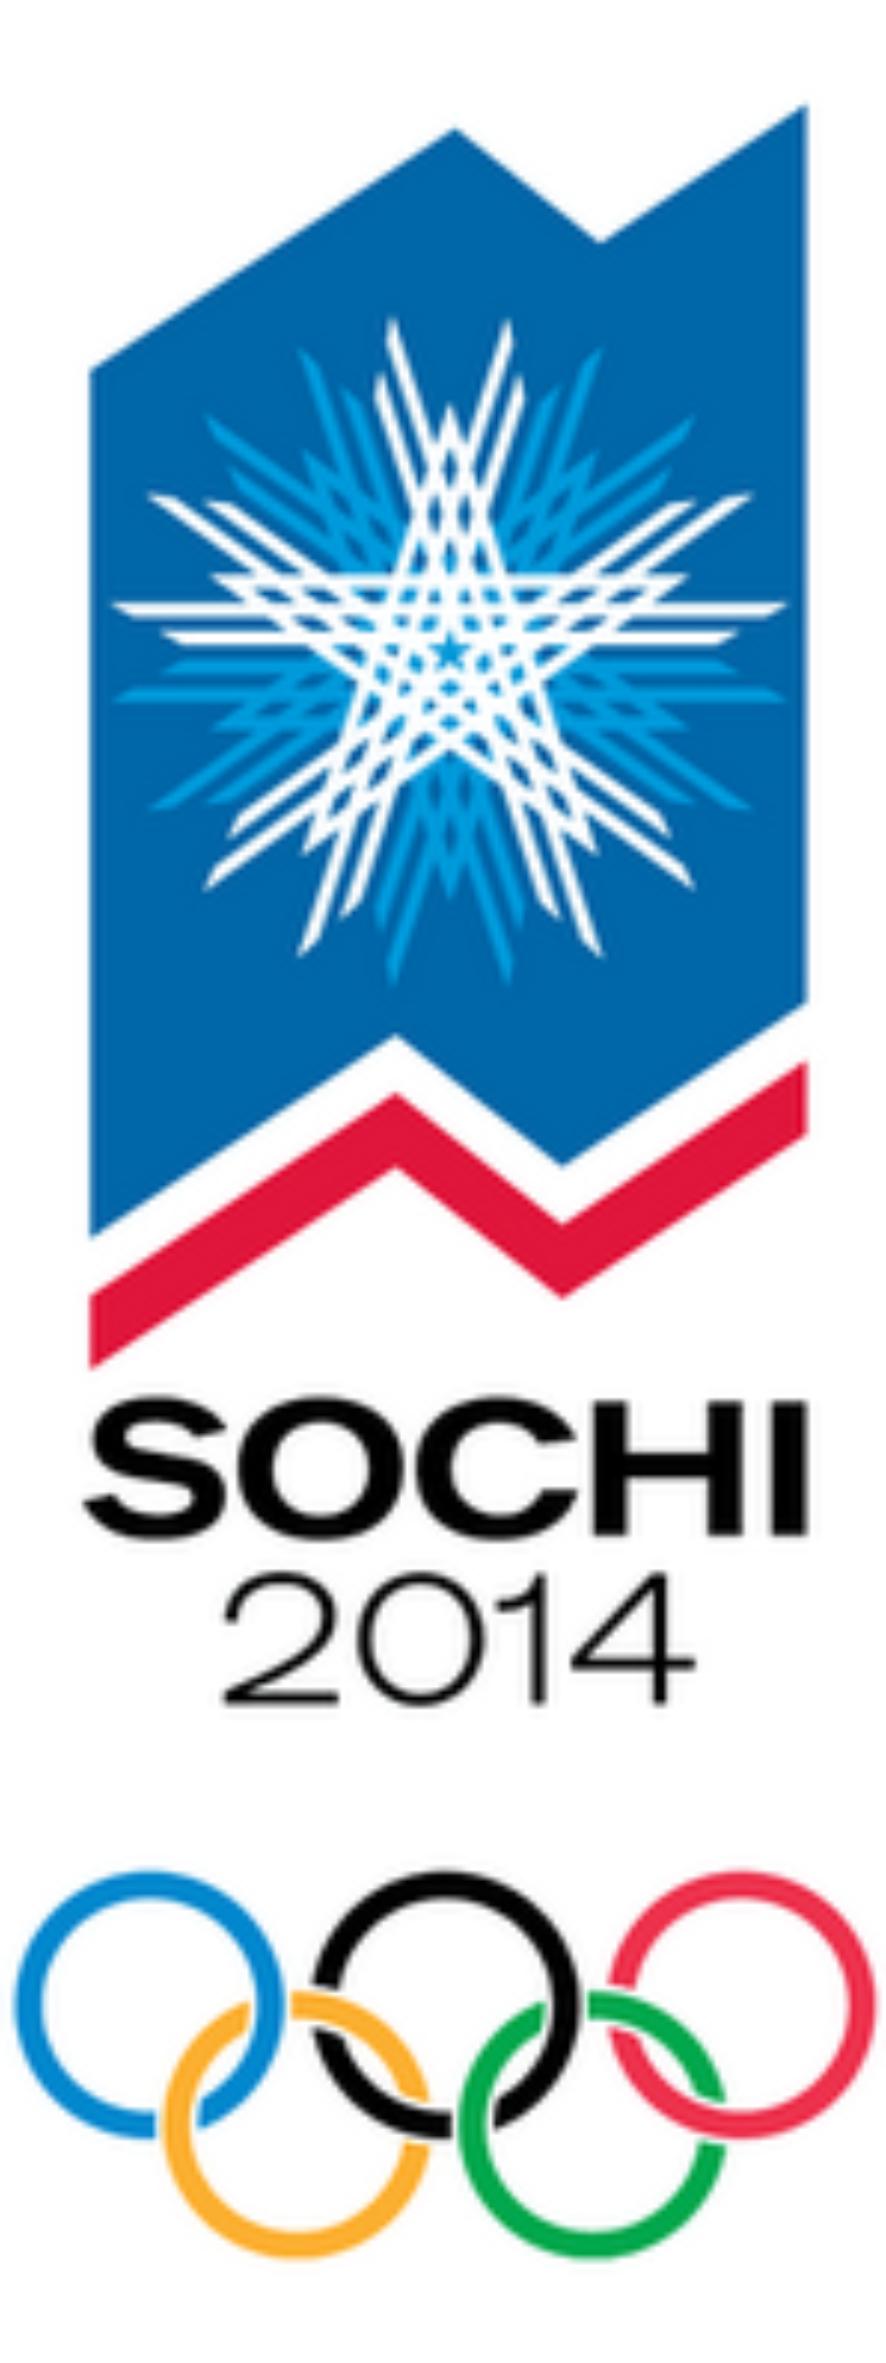 Около 800 саратовцев желают трудоустроиться в Сочи на период подготовки и проведения зимних Олимпийских игр